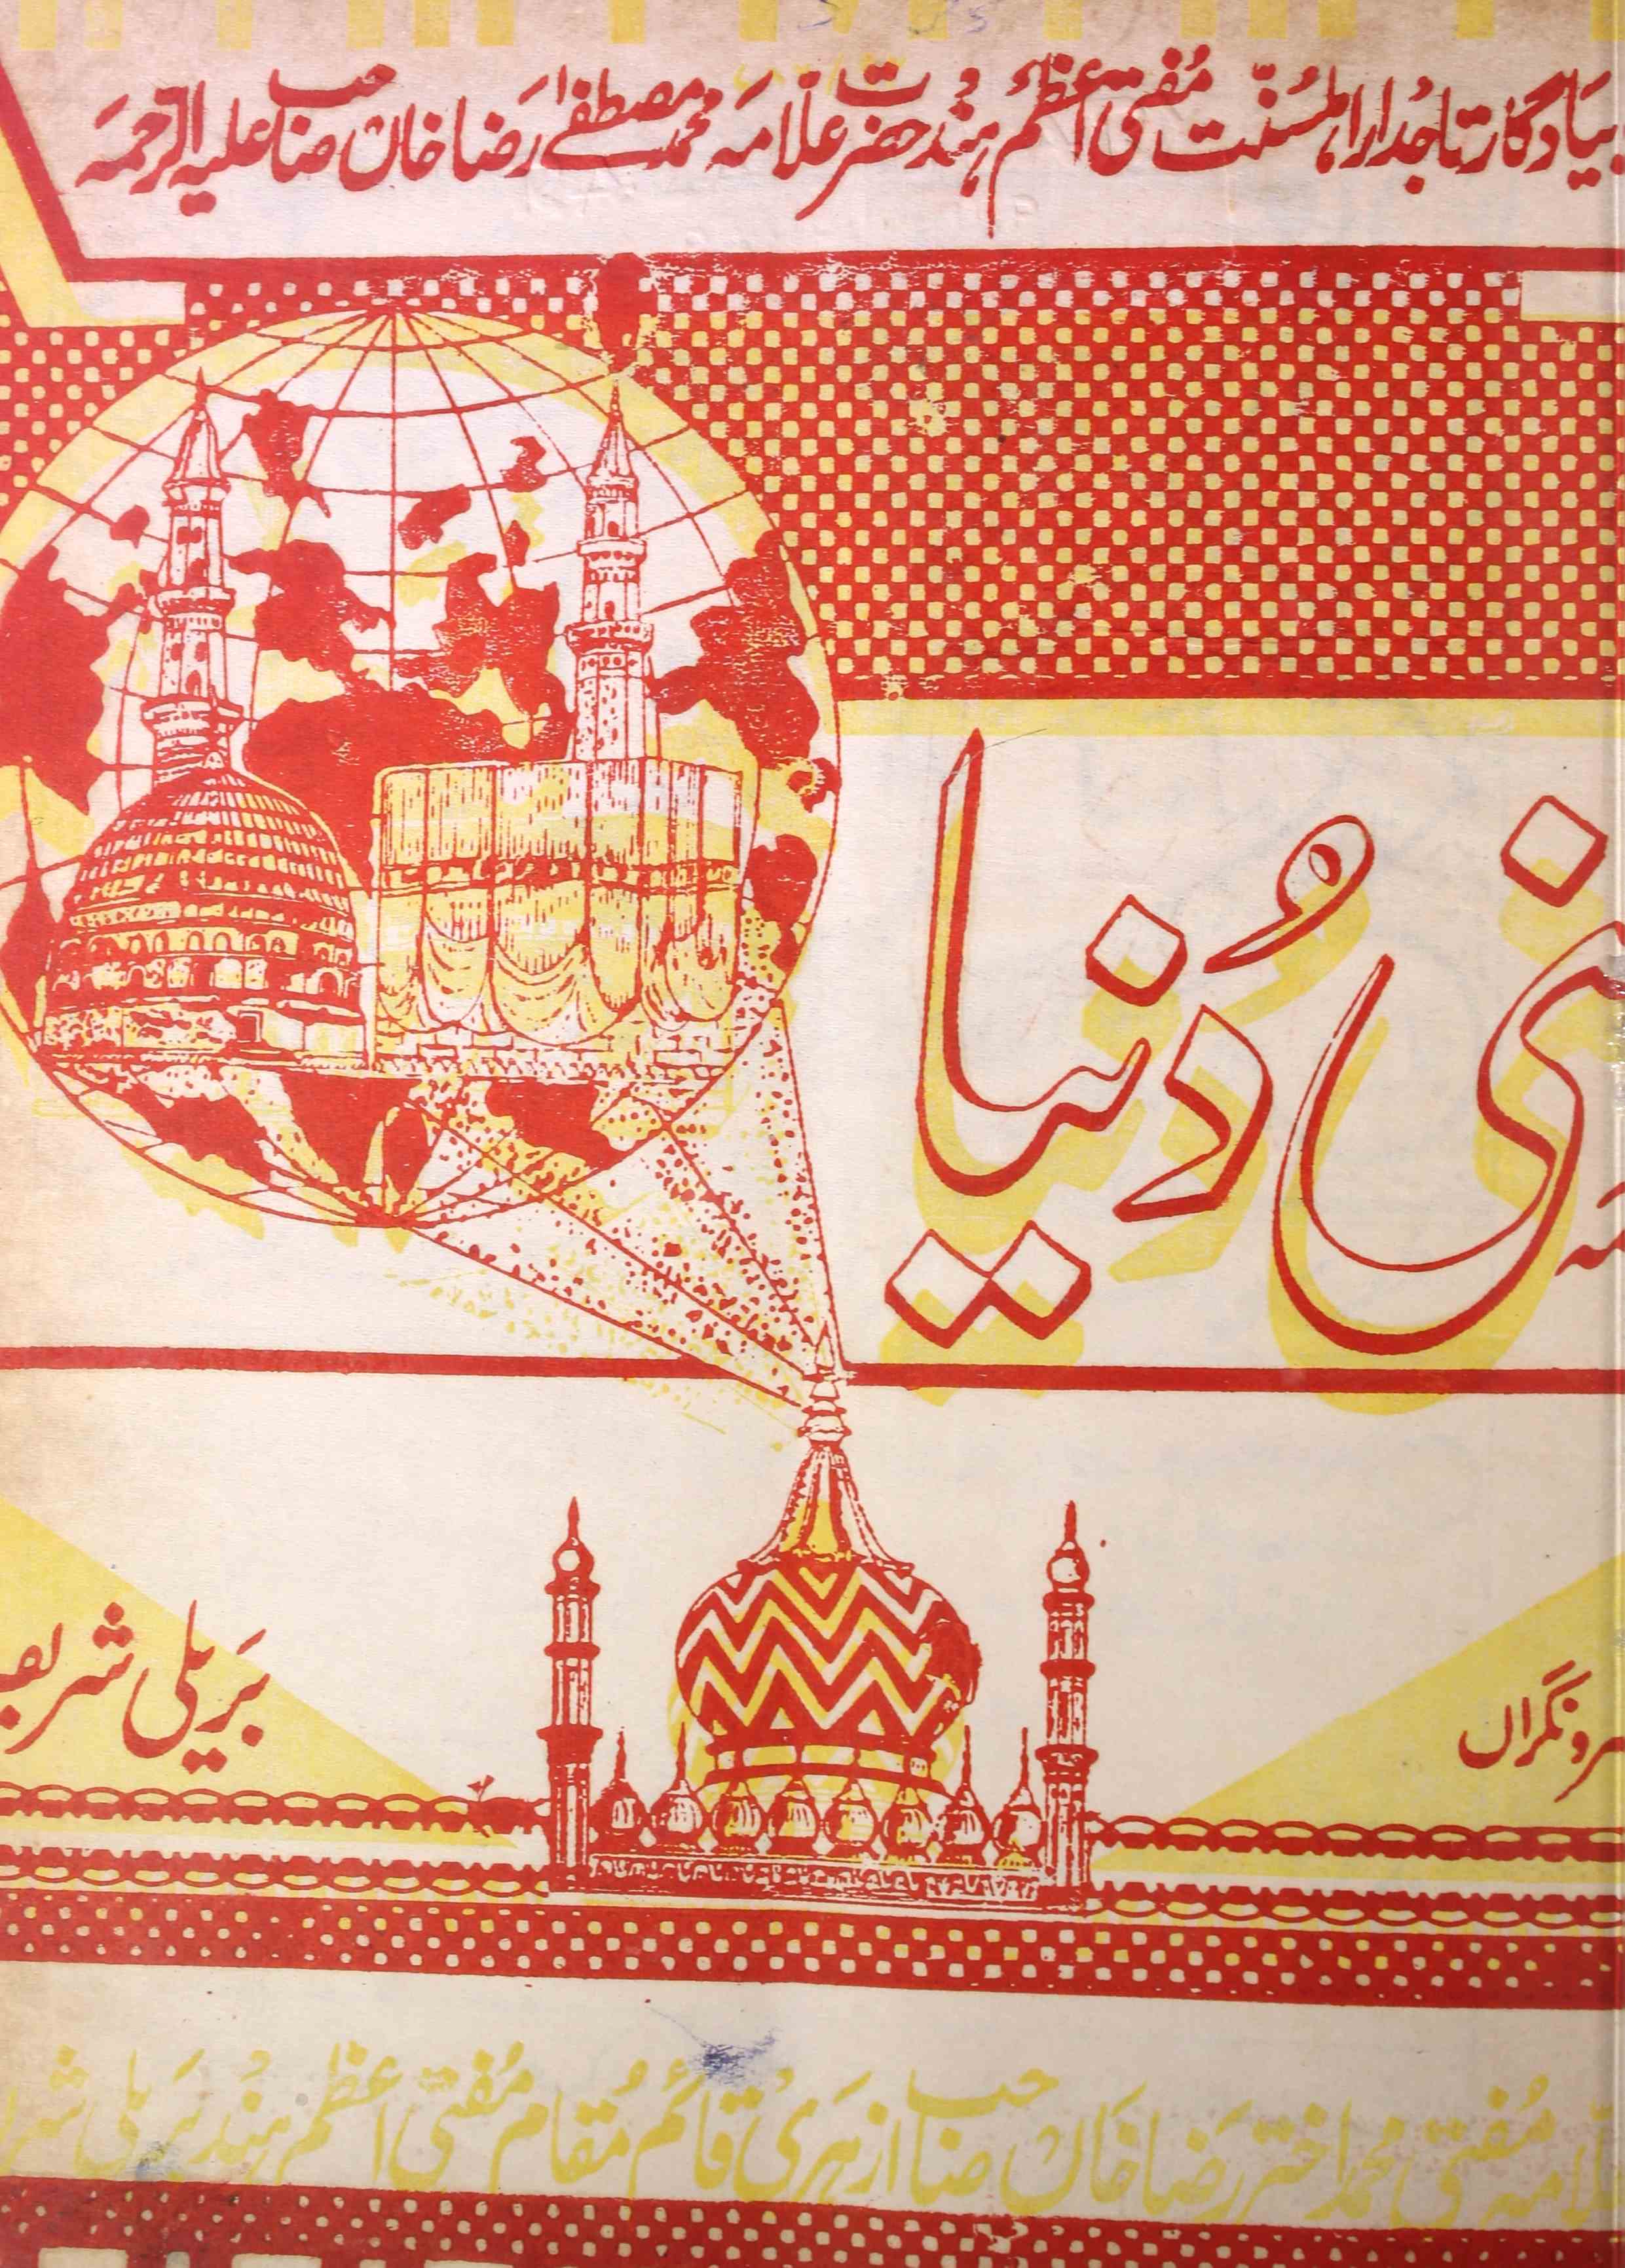 Sunni Dunia Jild 3 Shumara 30   May 1985